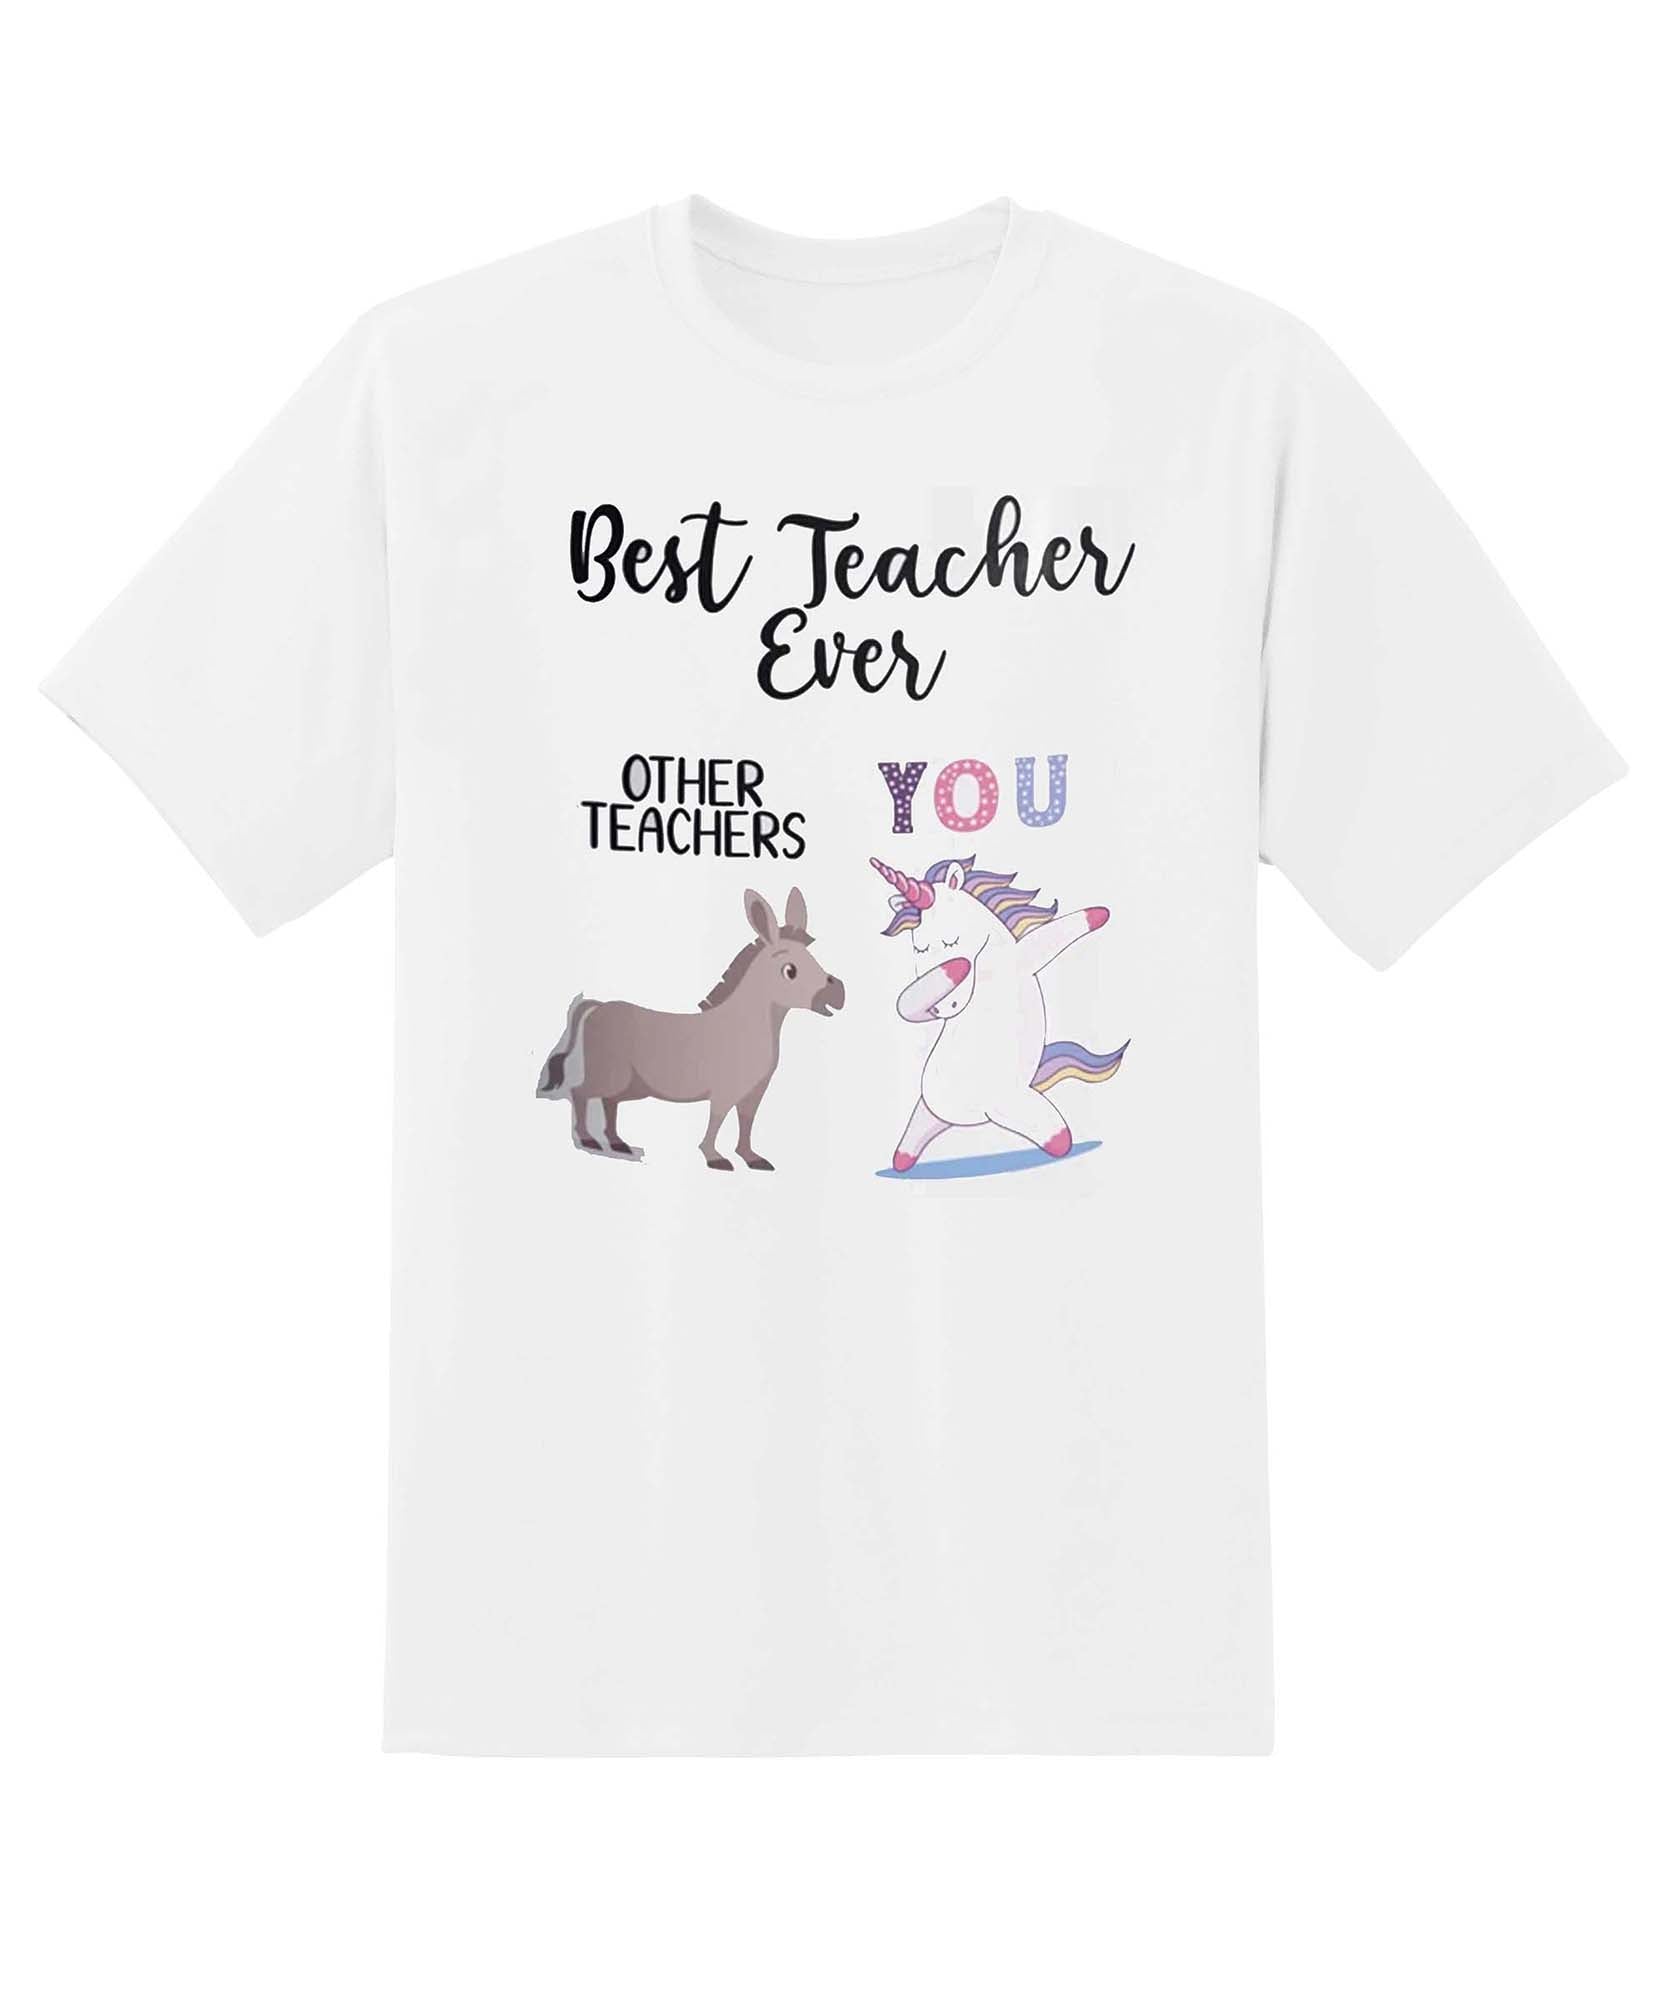 Skitongift Best Teacher Ever Unicorn Funny Shirts Hoodie Short Sleeve Casual Shirt